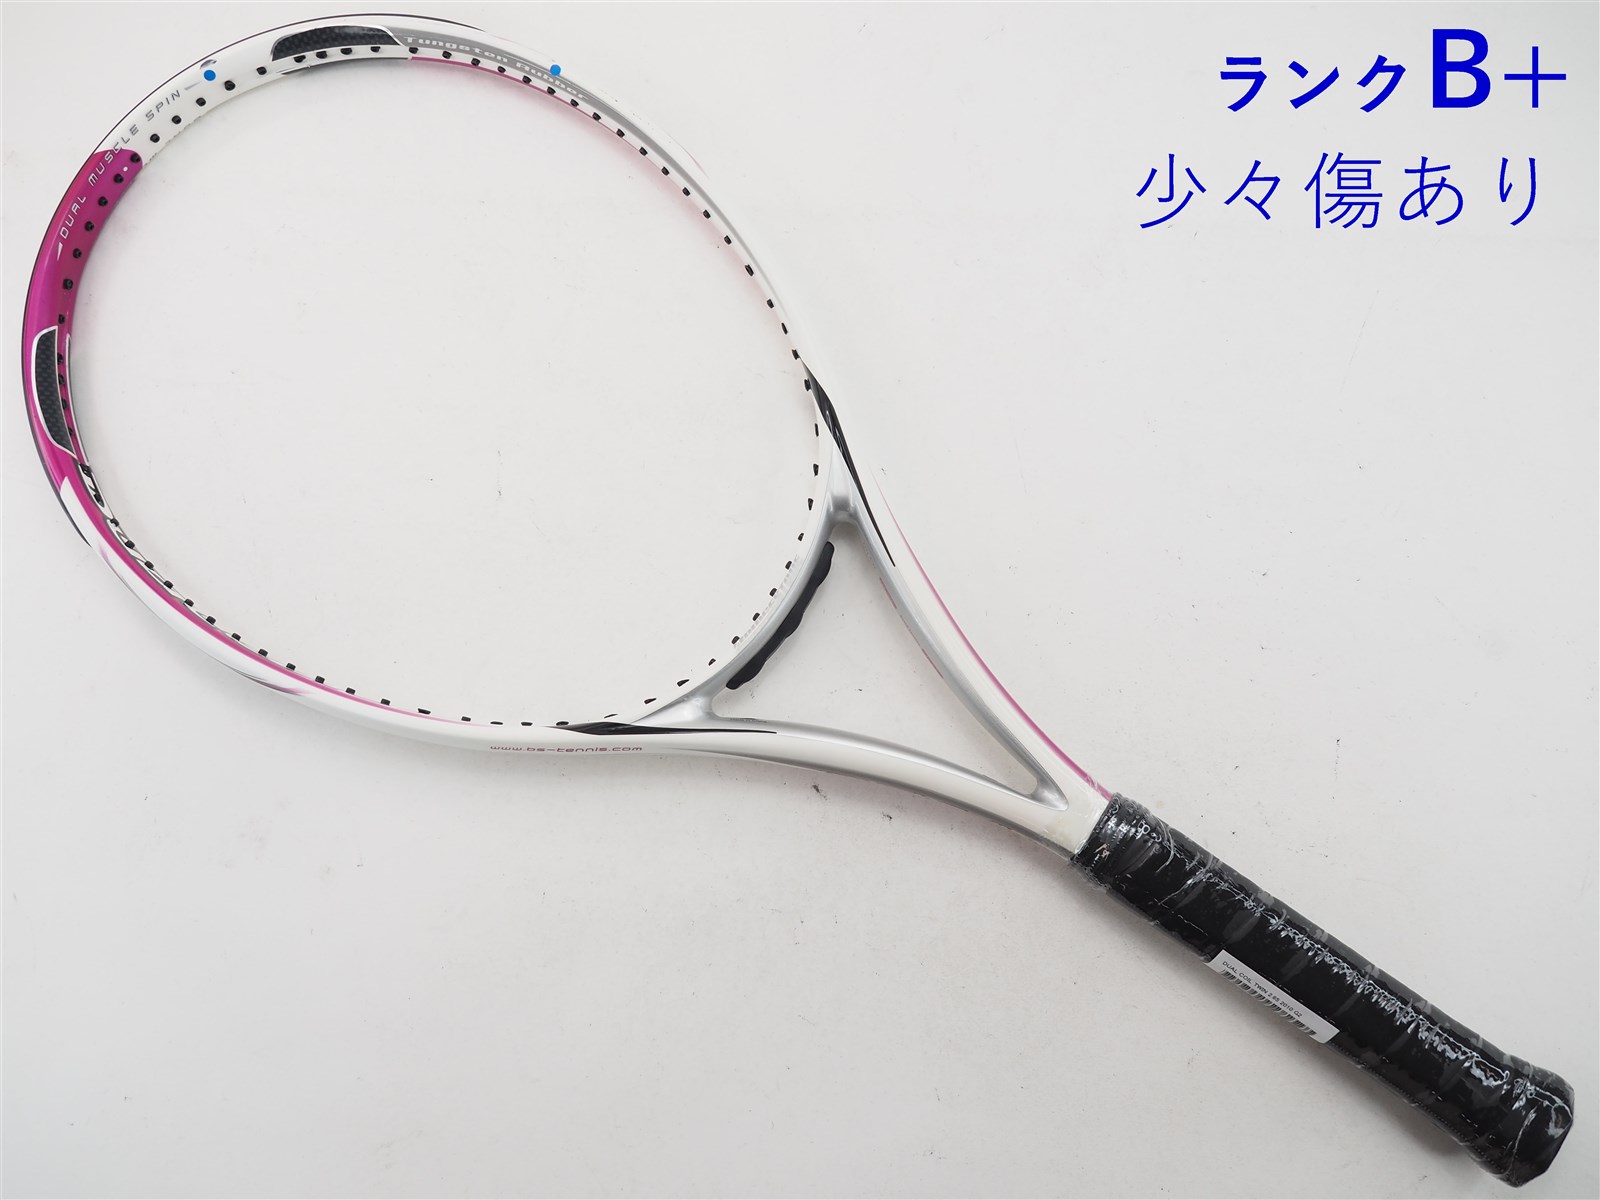 テニスラケット ブリヂストン デュアルコイル 300 2014年モデル (G2)BRIDGESTONE DUAL COiL 300 2014 -  スポーツ別